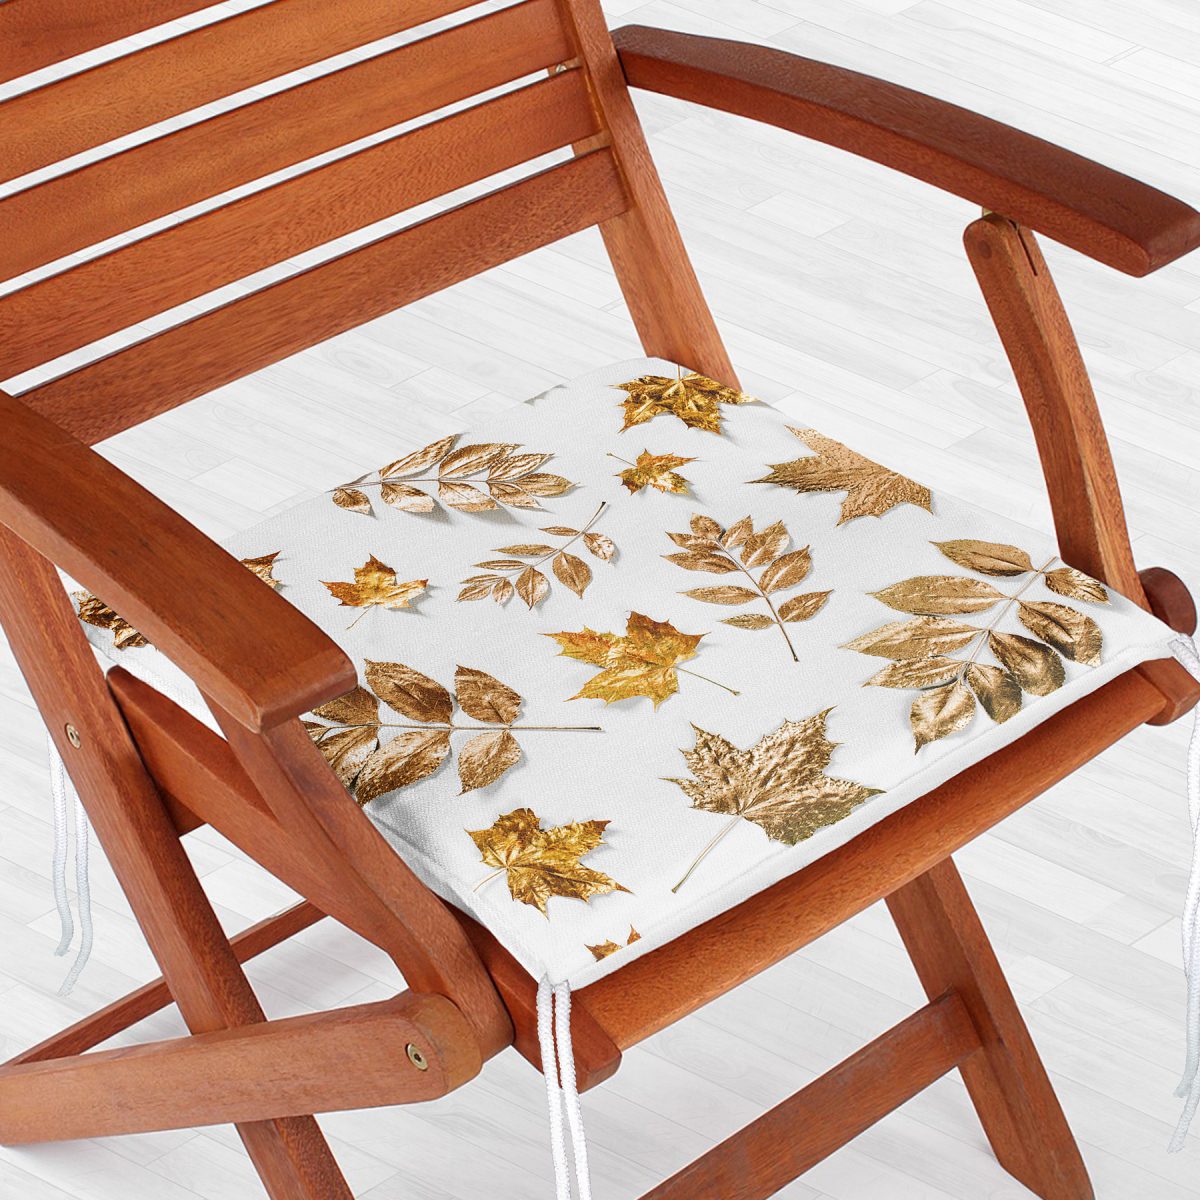 3D Altın Renkli Yapraklar Özel Tasarım Modern Fermuarlı Sandalye Minderi Realhomes